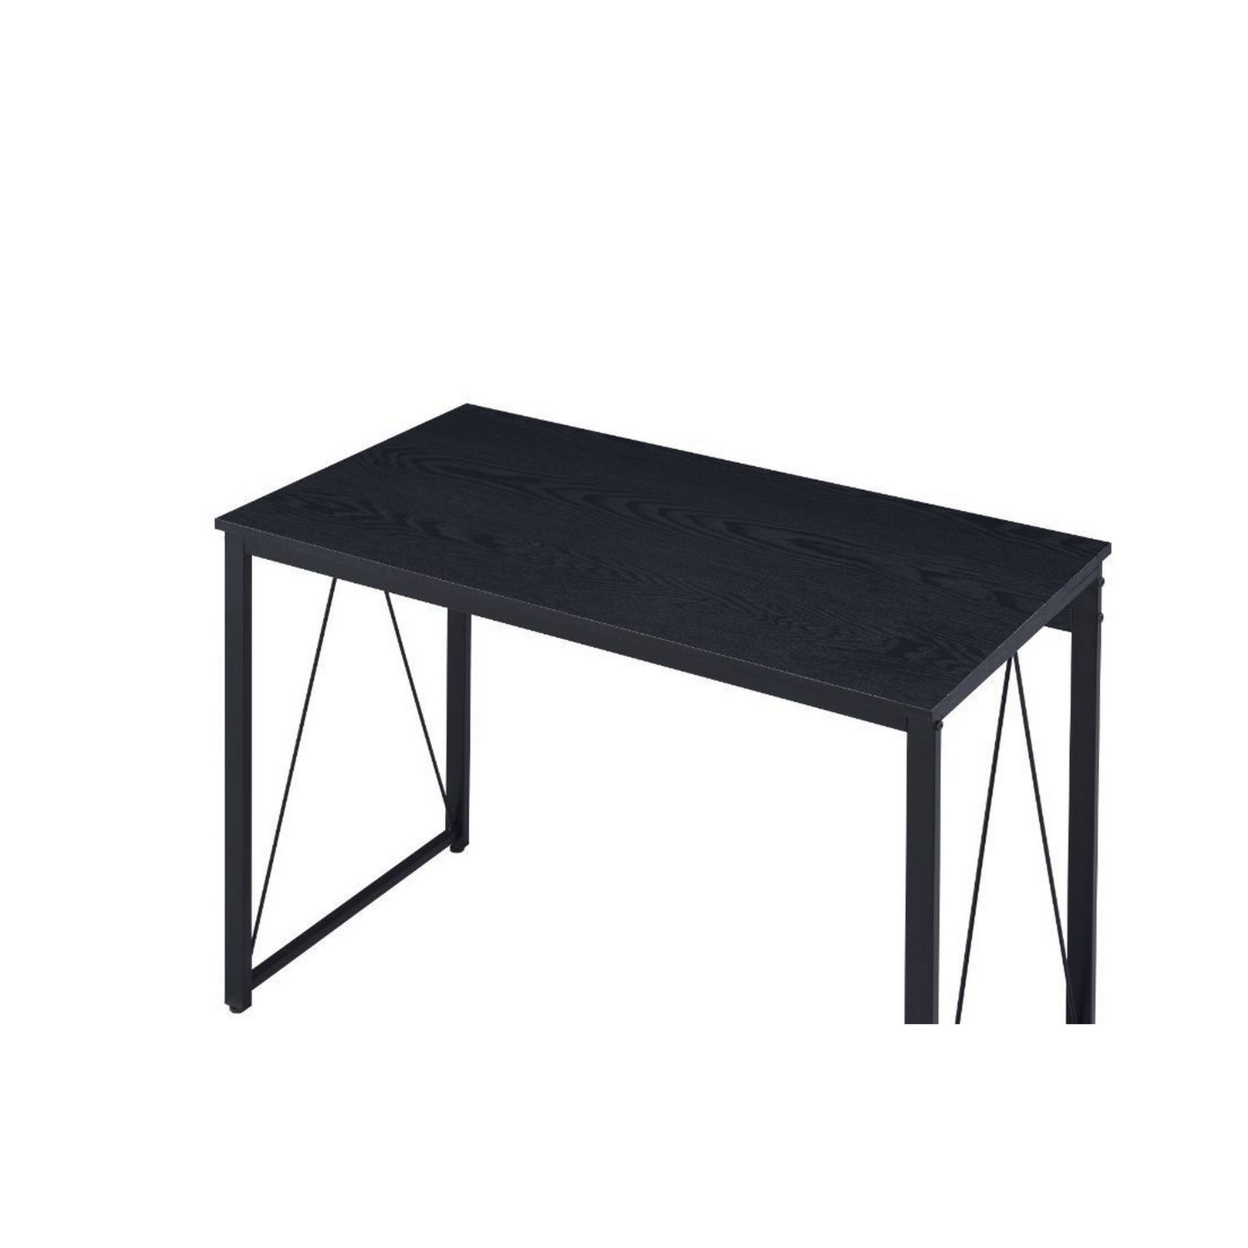 Writing Desk With Metal Frame And Inverted V Sides, Black- Saltoro Sherpi